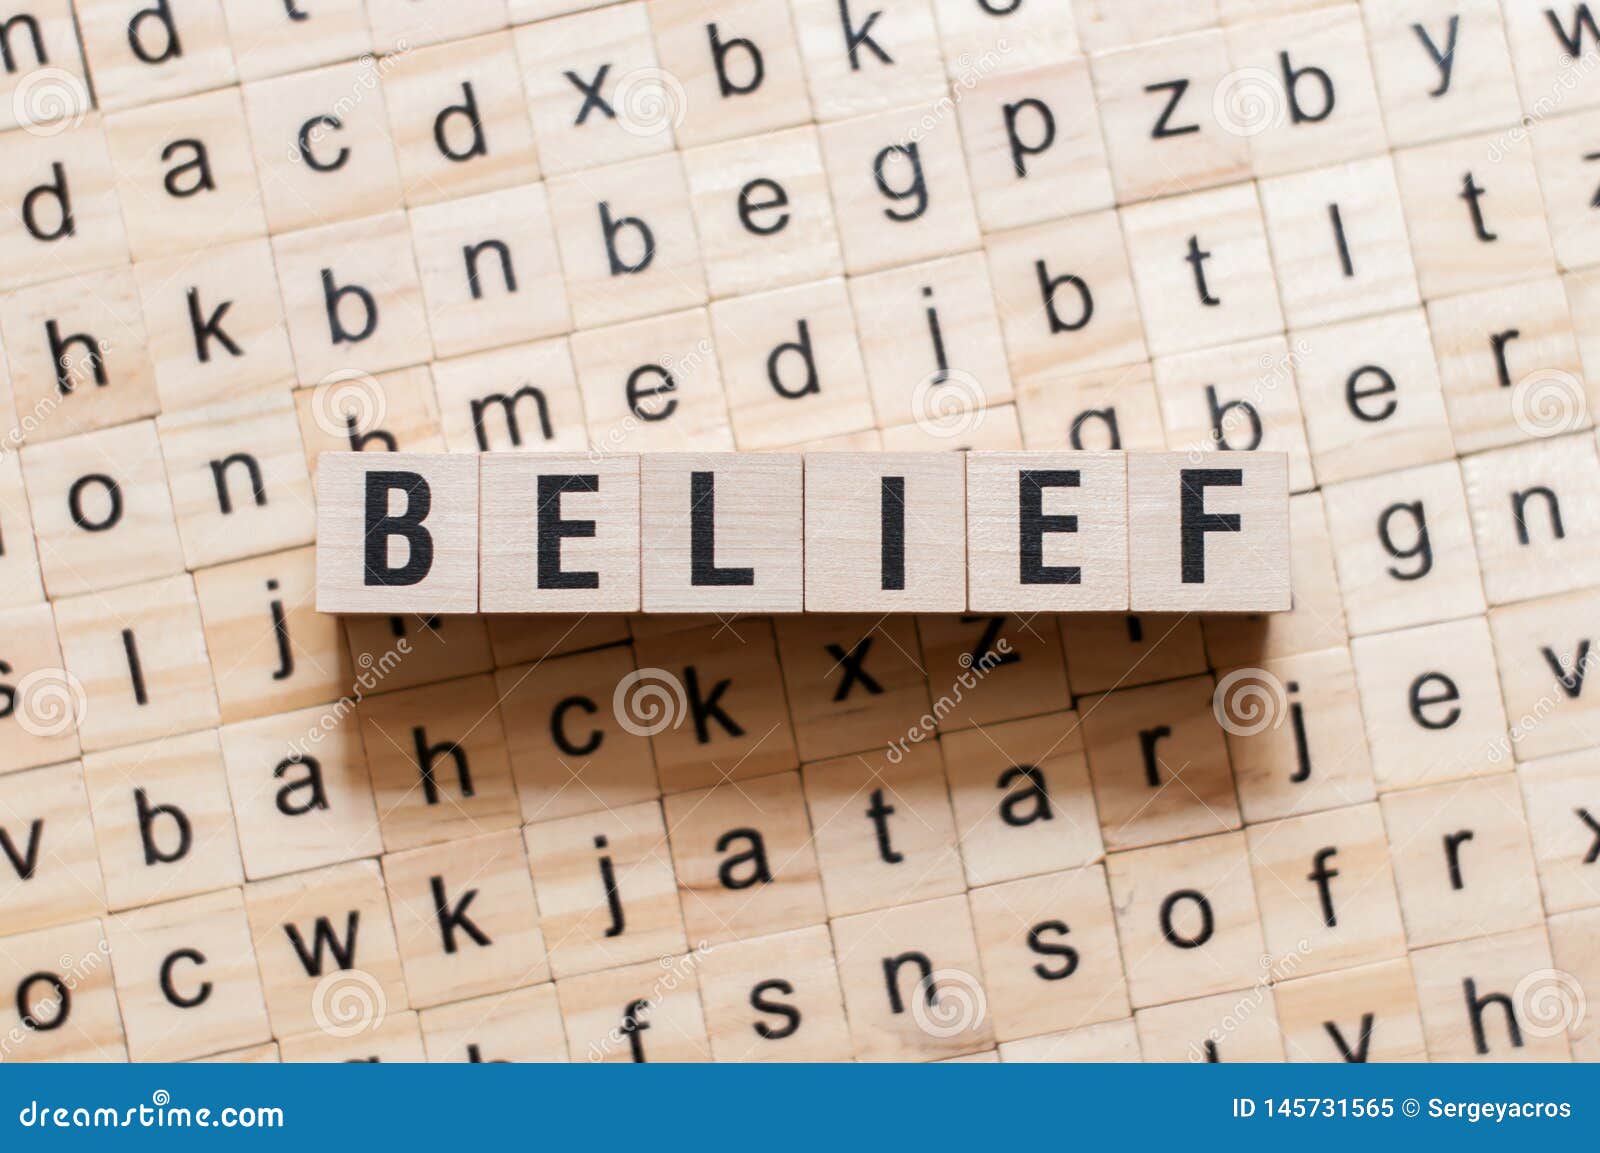 belief word concept